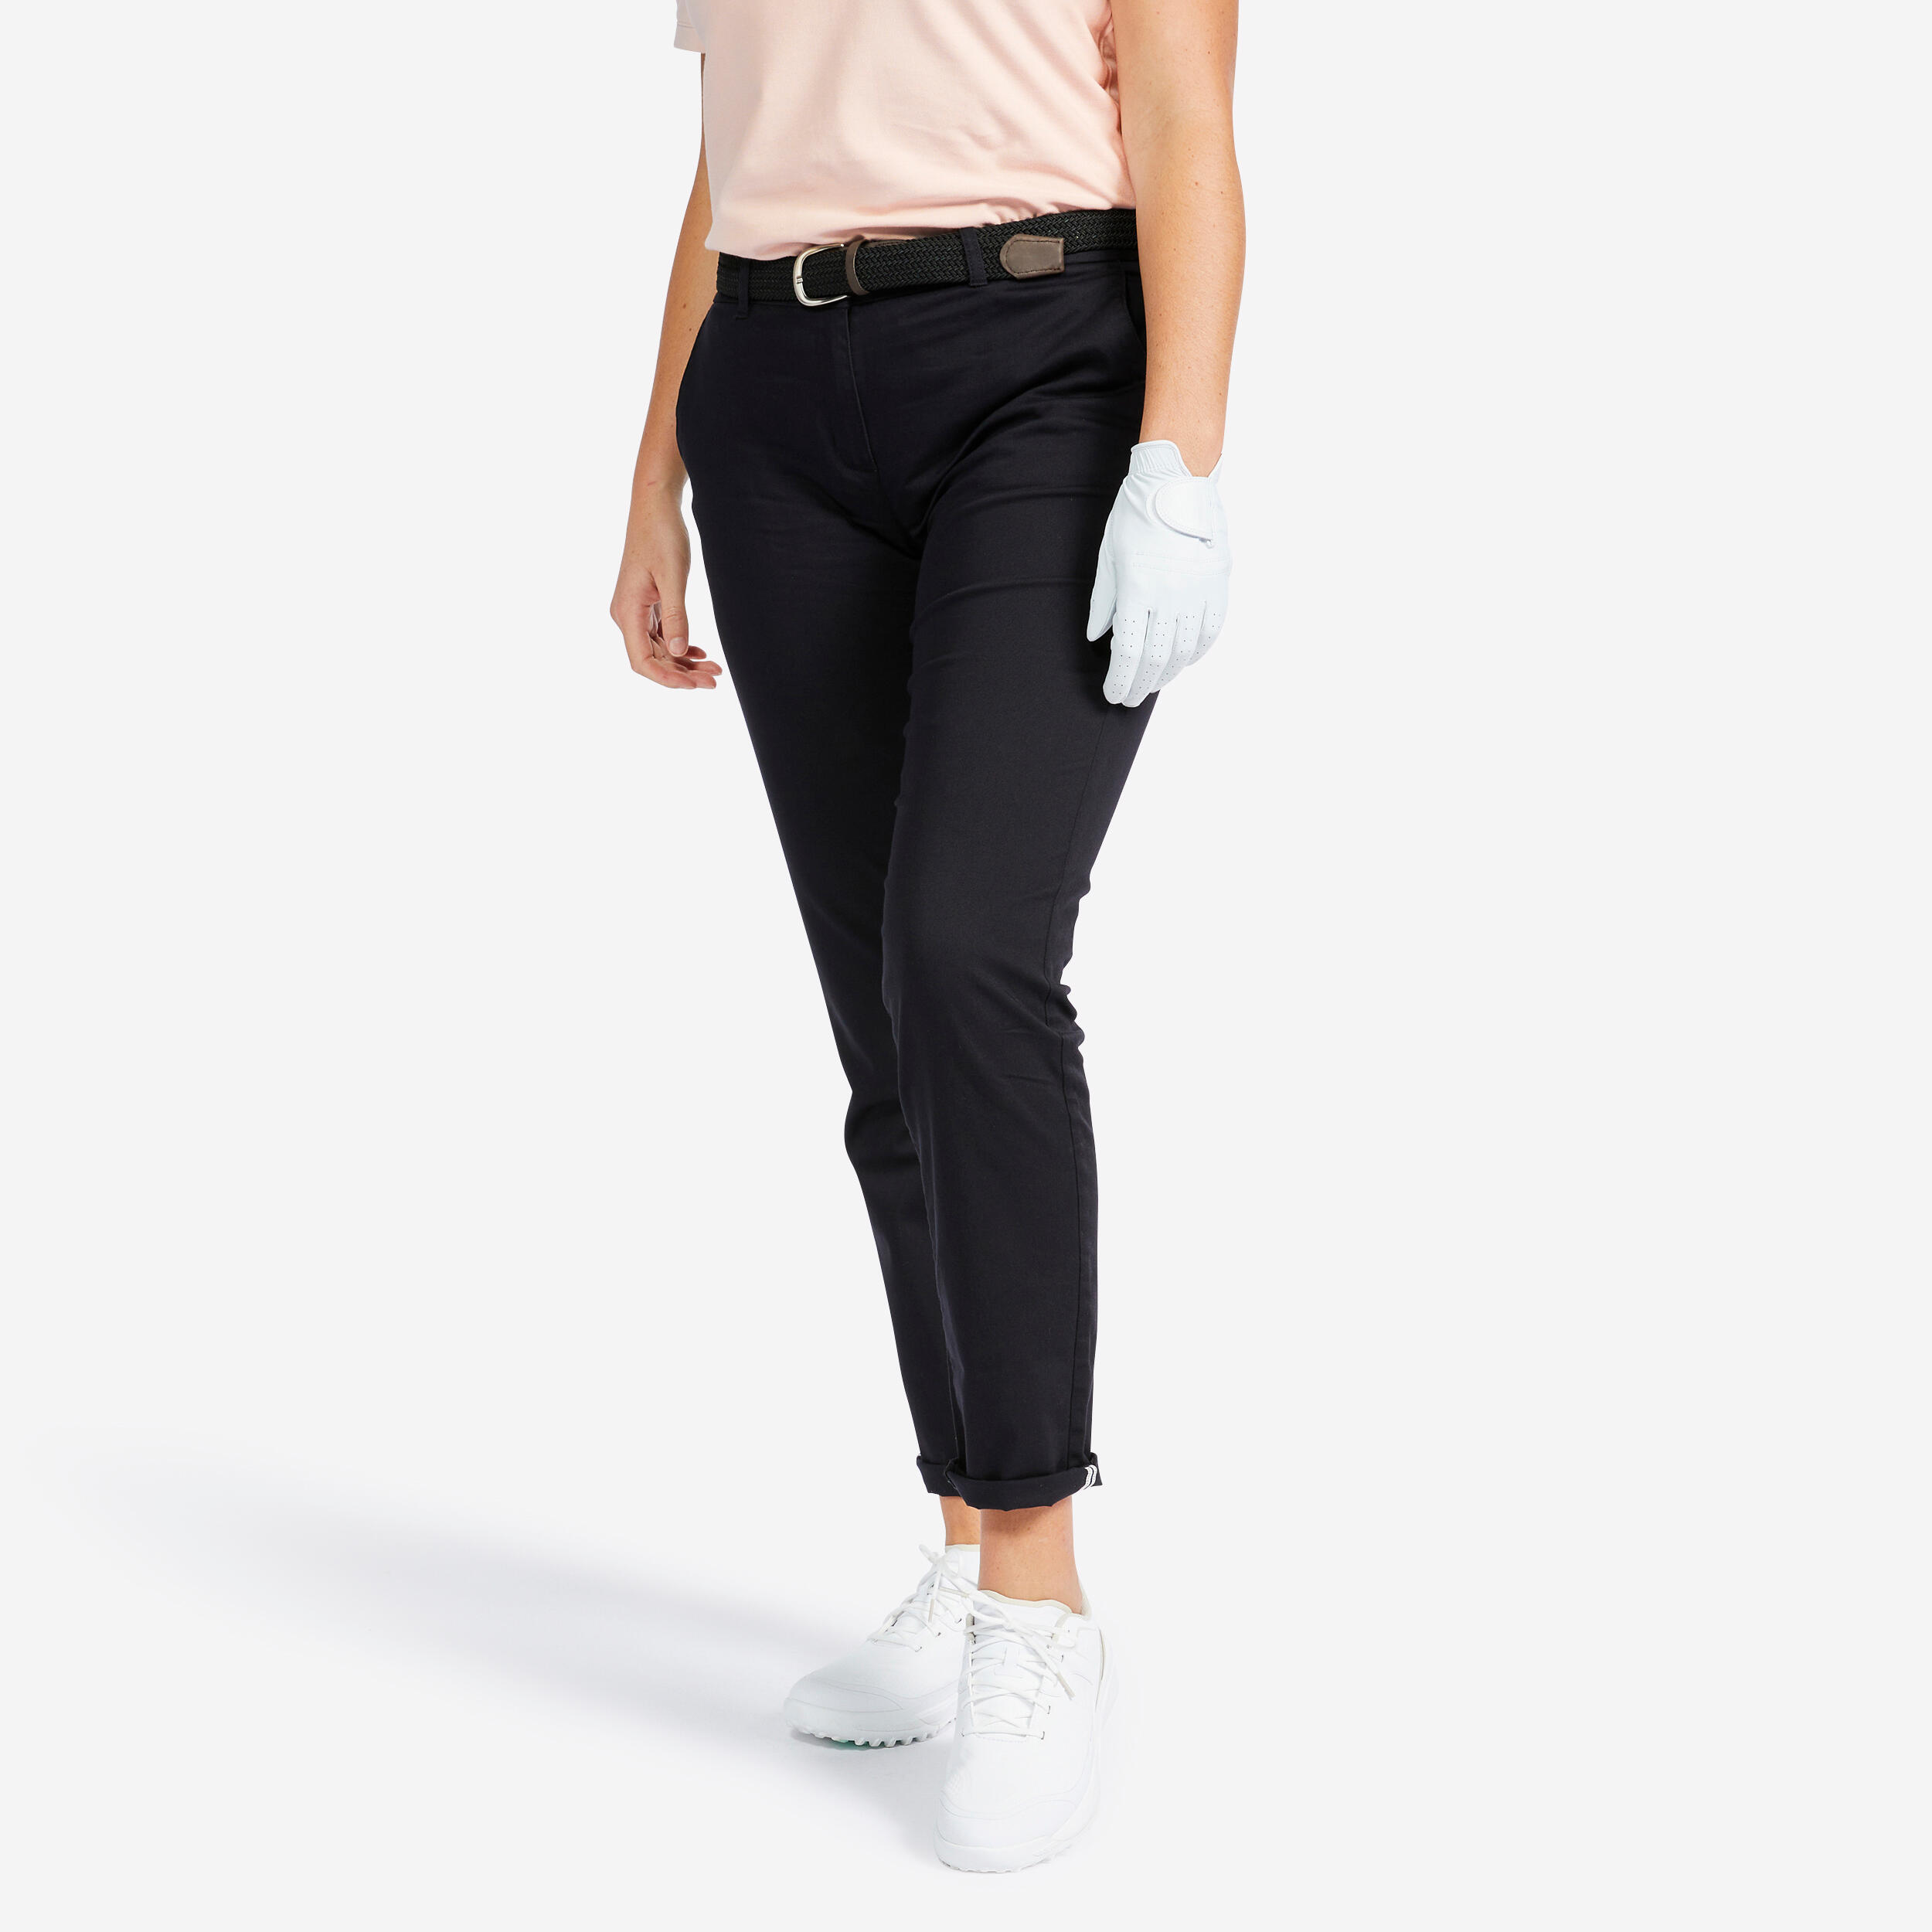 Women's Golf Pants - MW 500 Black